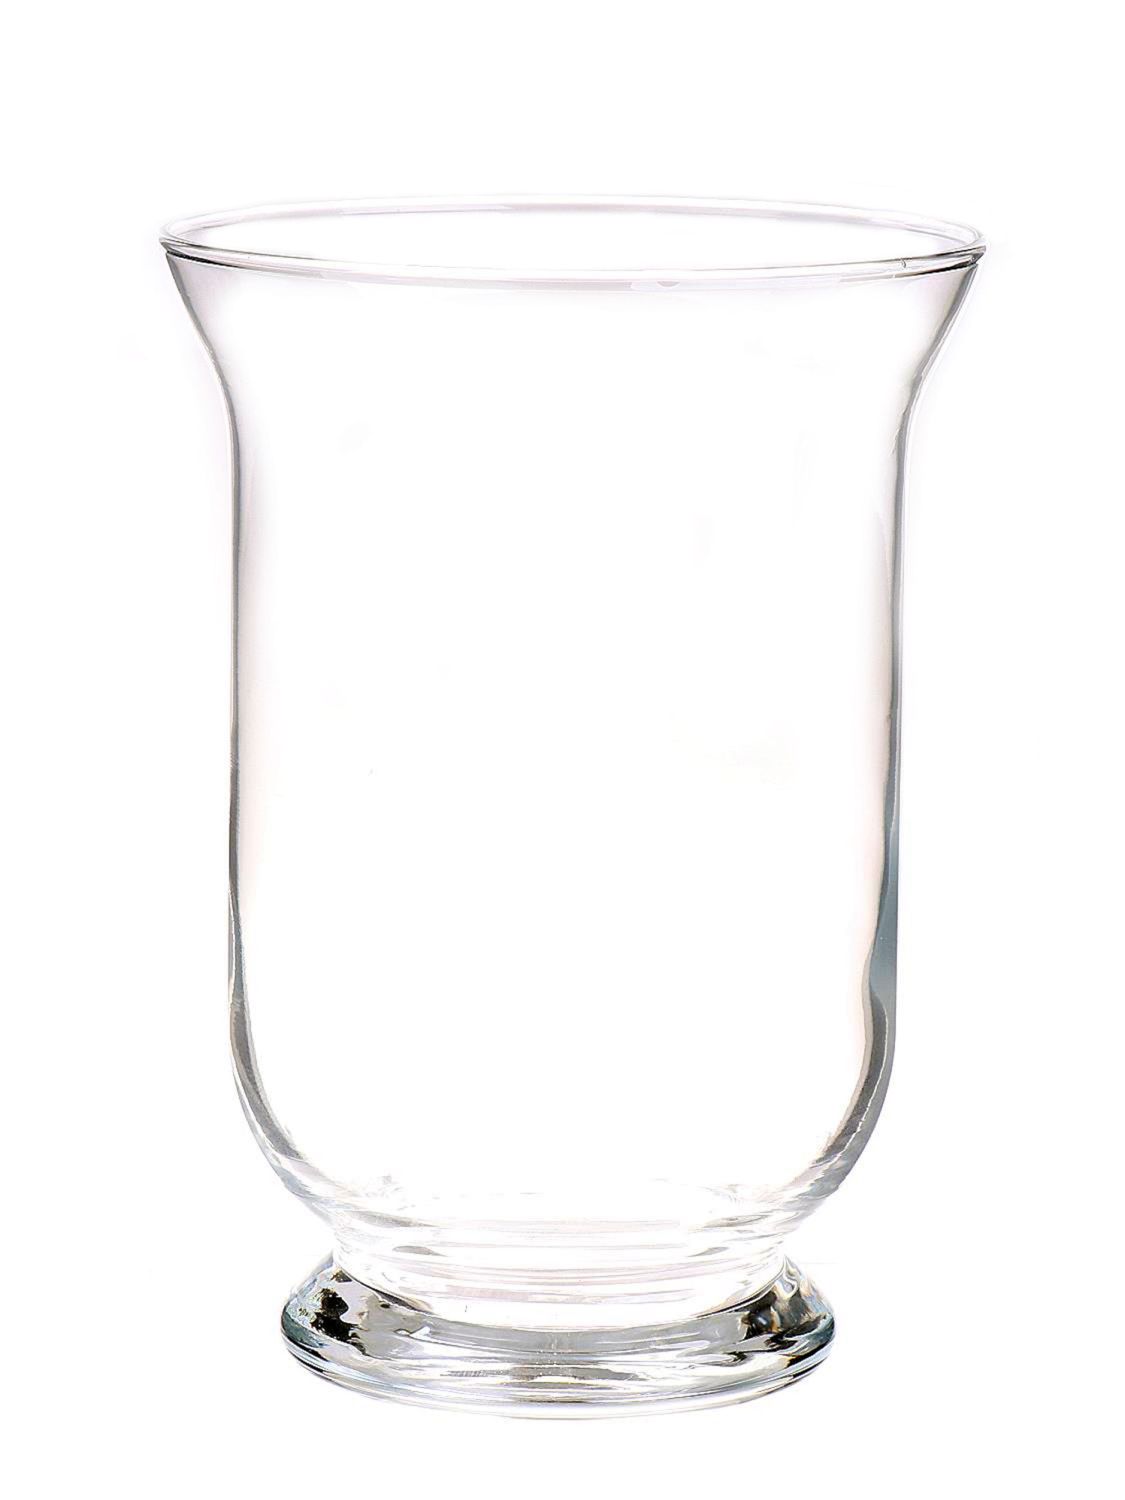 Windlicht Glas LEA AIR, klar, 19,5cm, Ø13,7cm | Windlichter